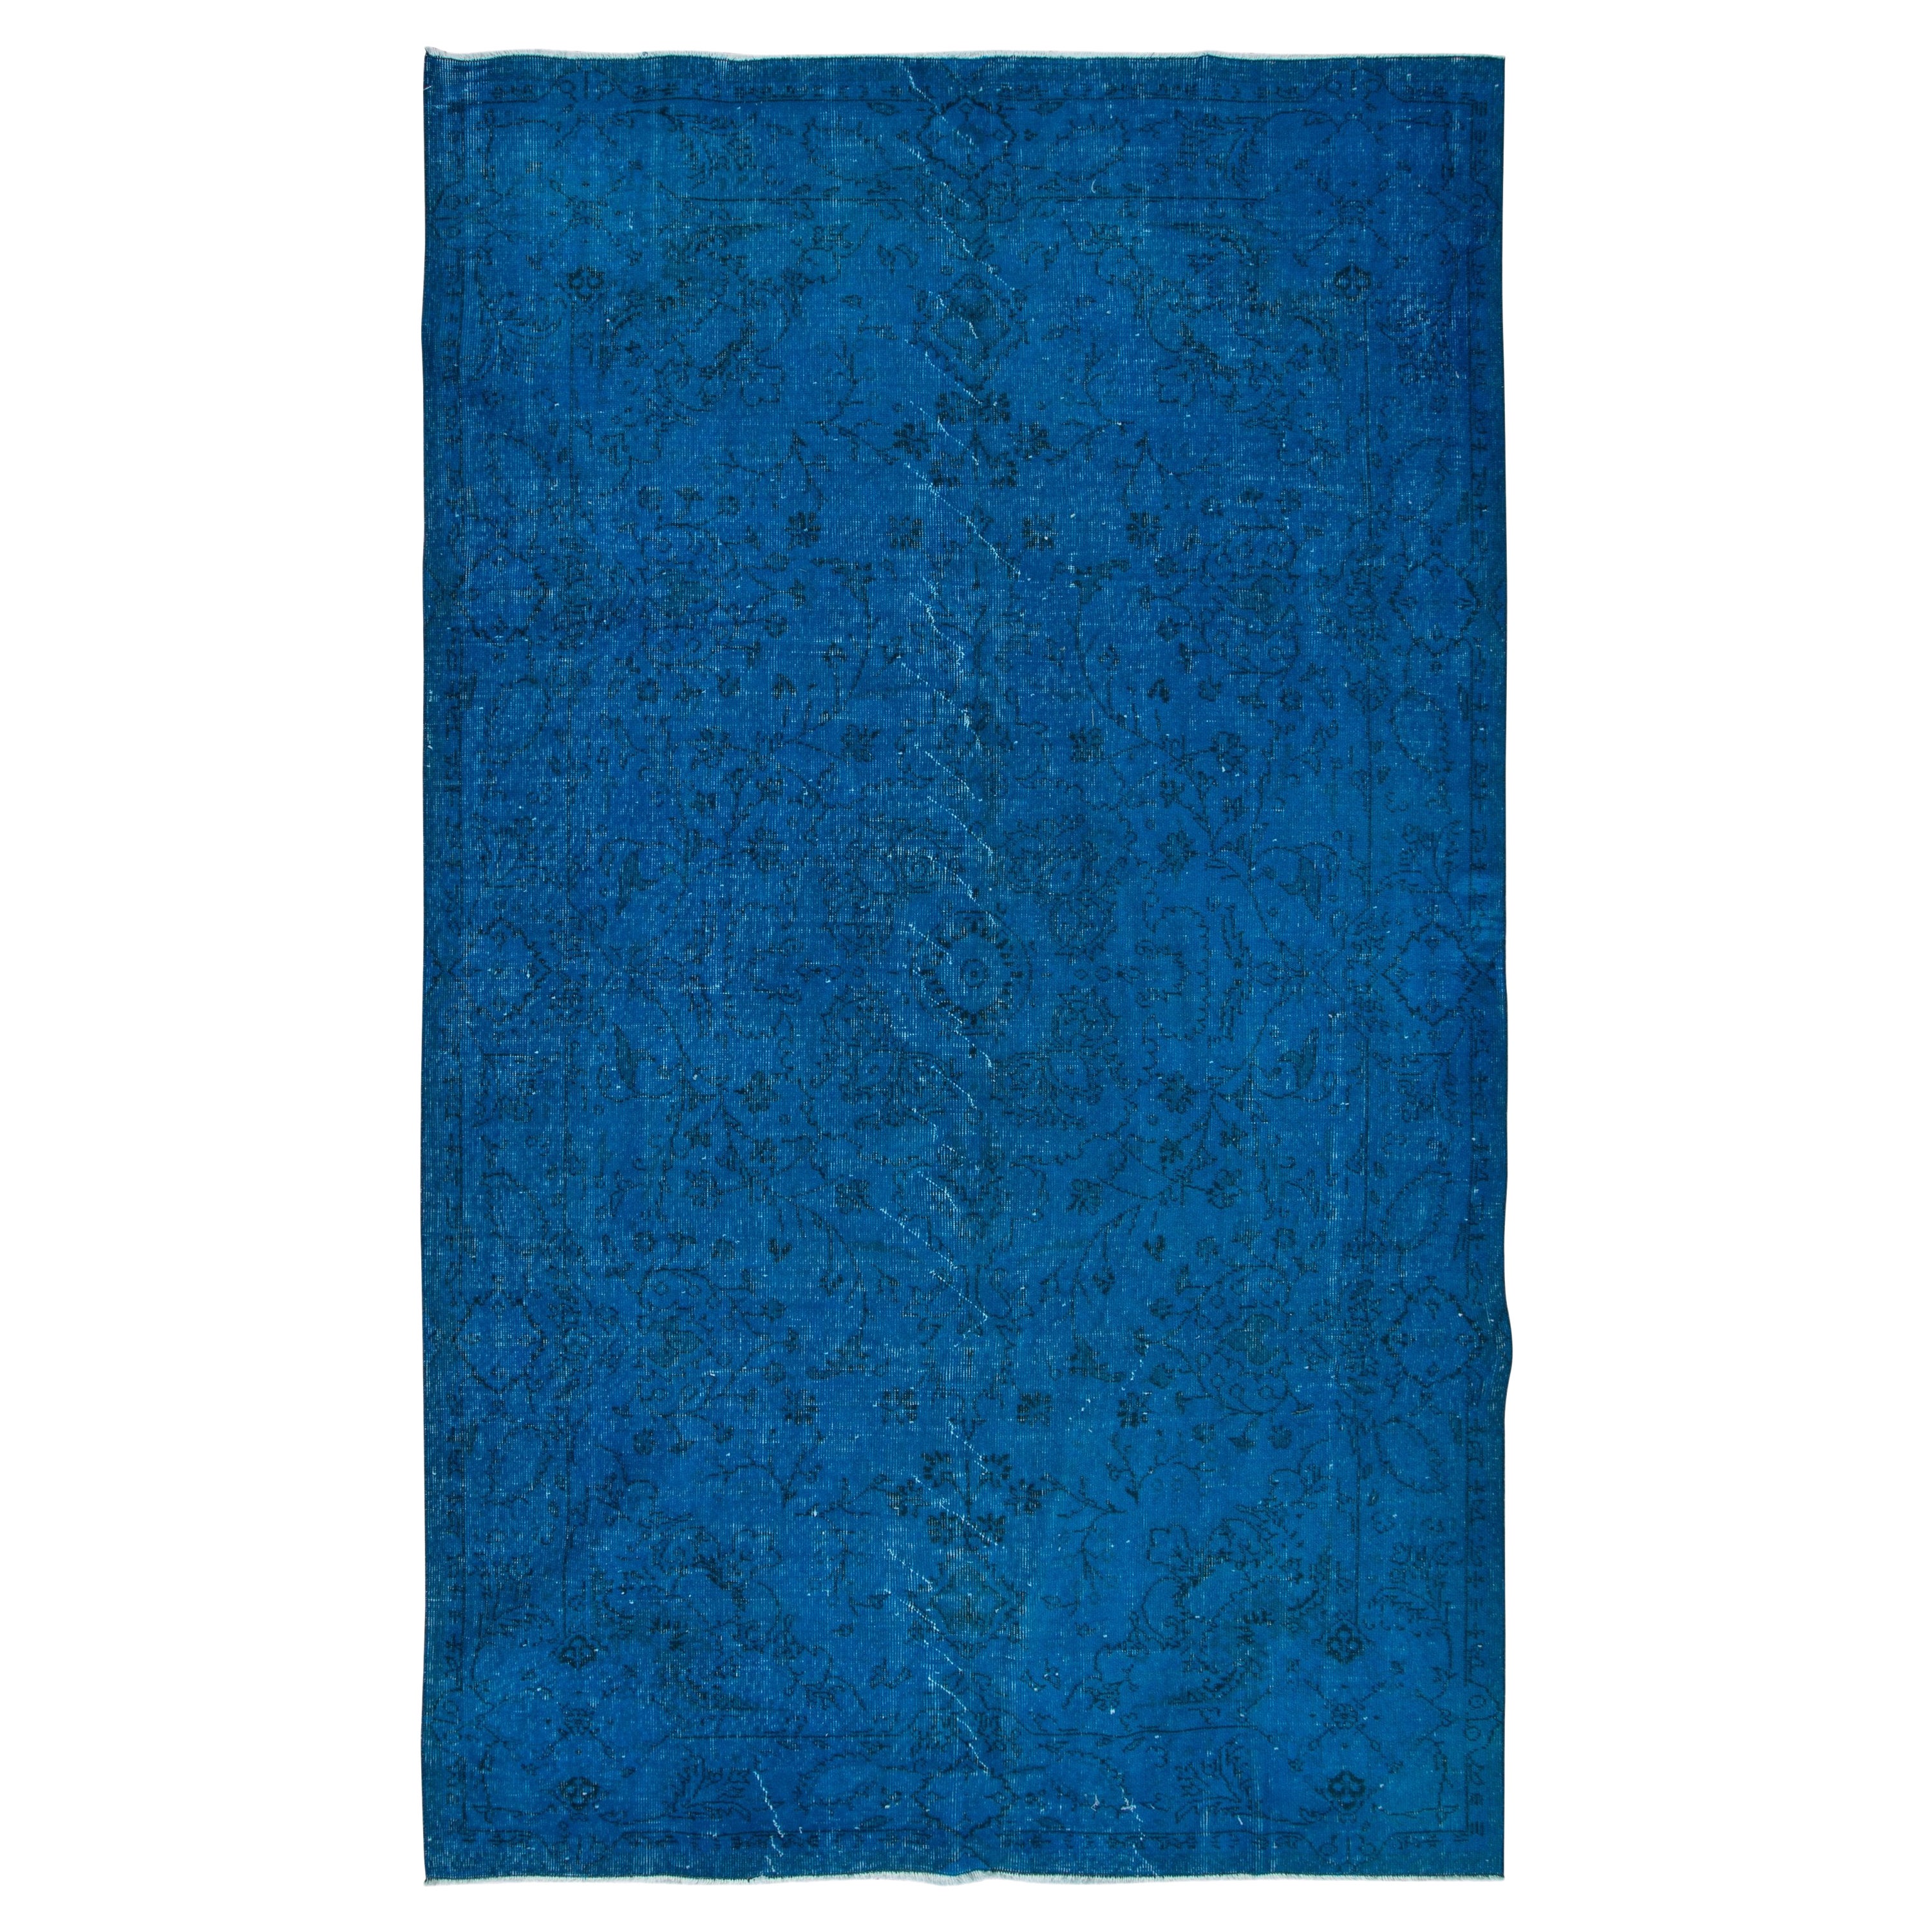 6x10 Ft authentischer handgefertigter türkischer Teppich in Blau, einzigartiger upcycelter Teppich, Unikat im Angebot